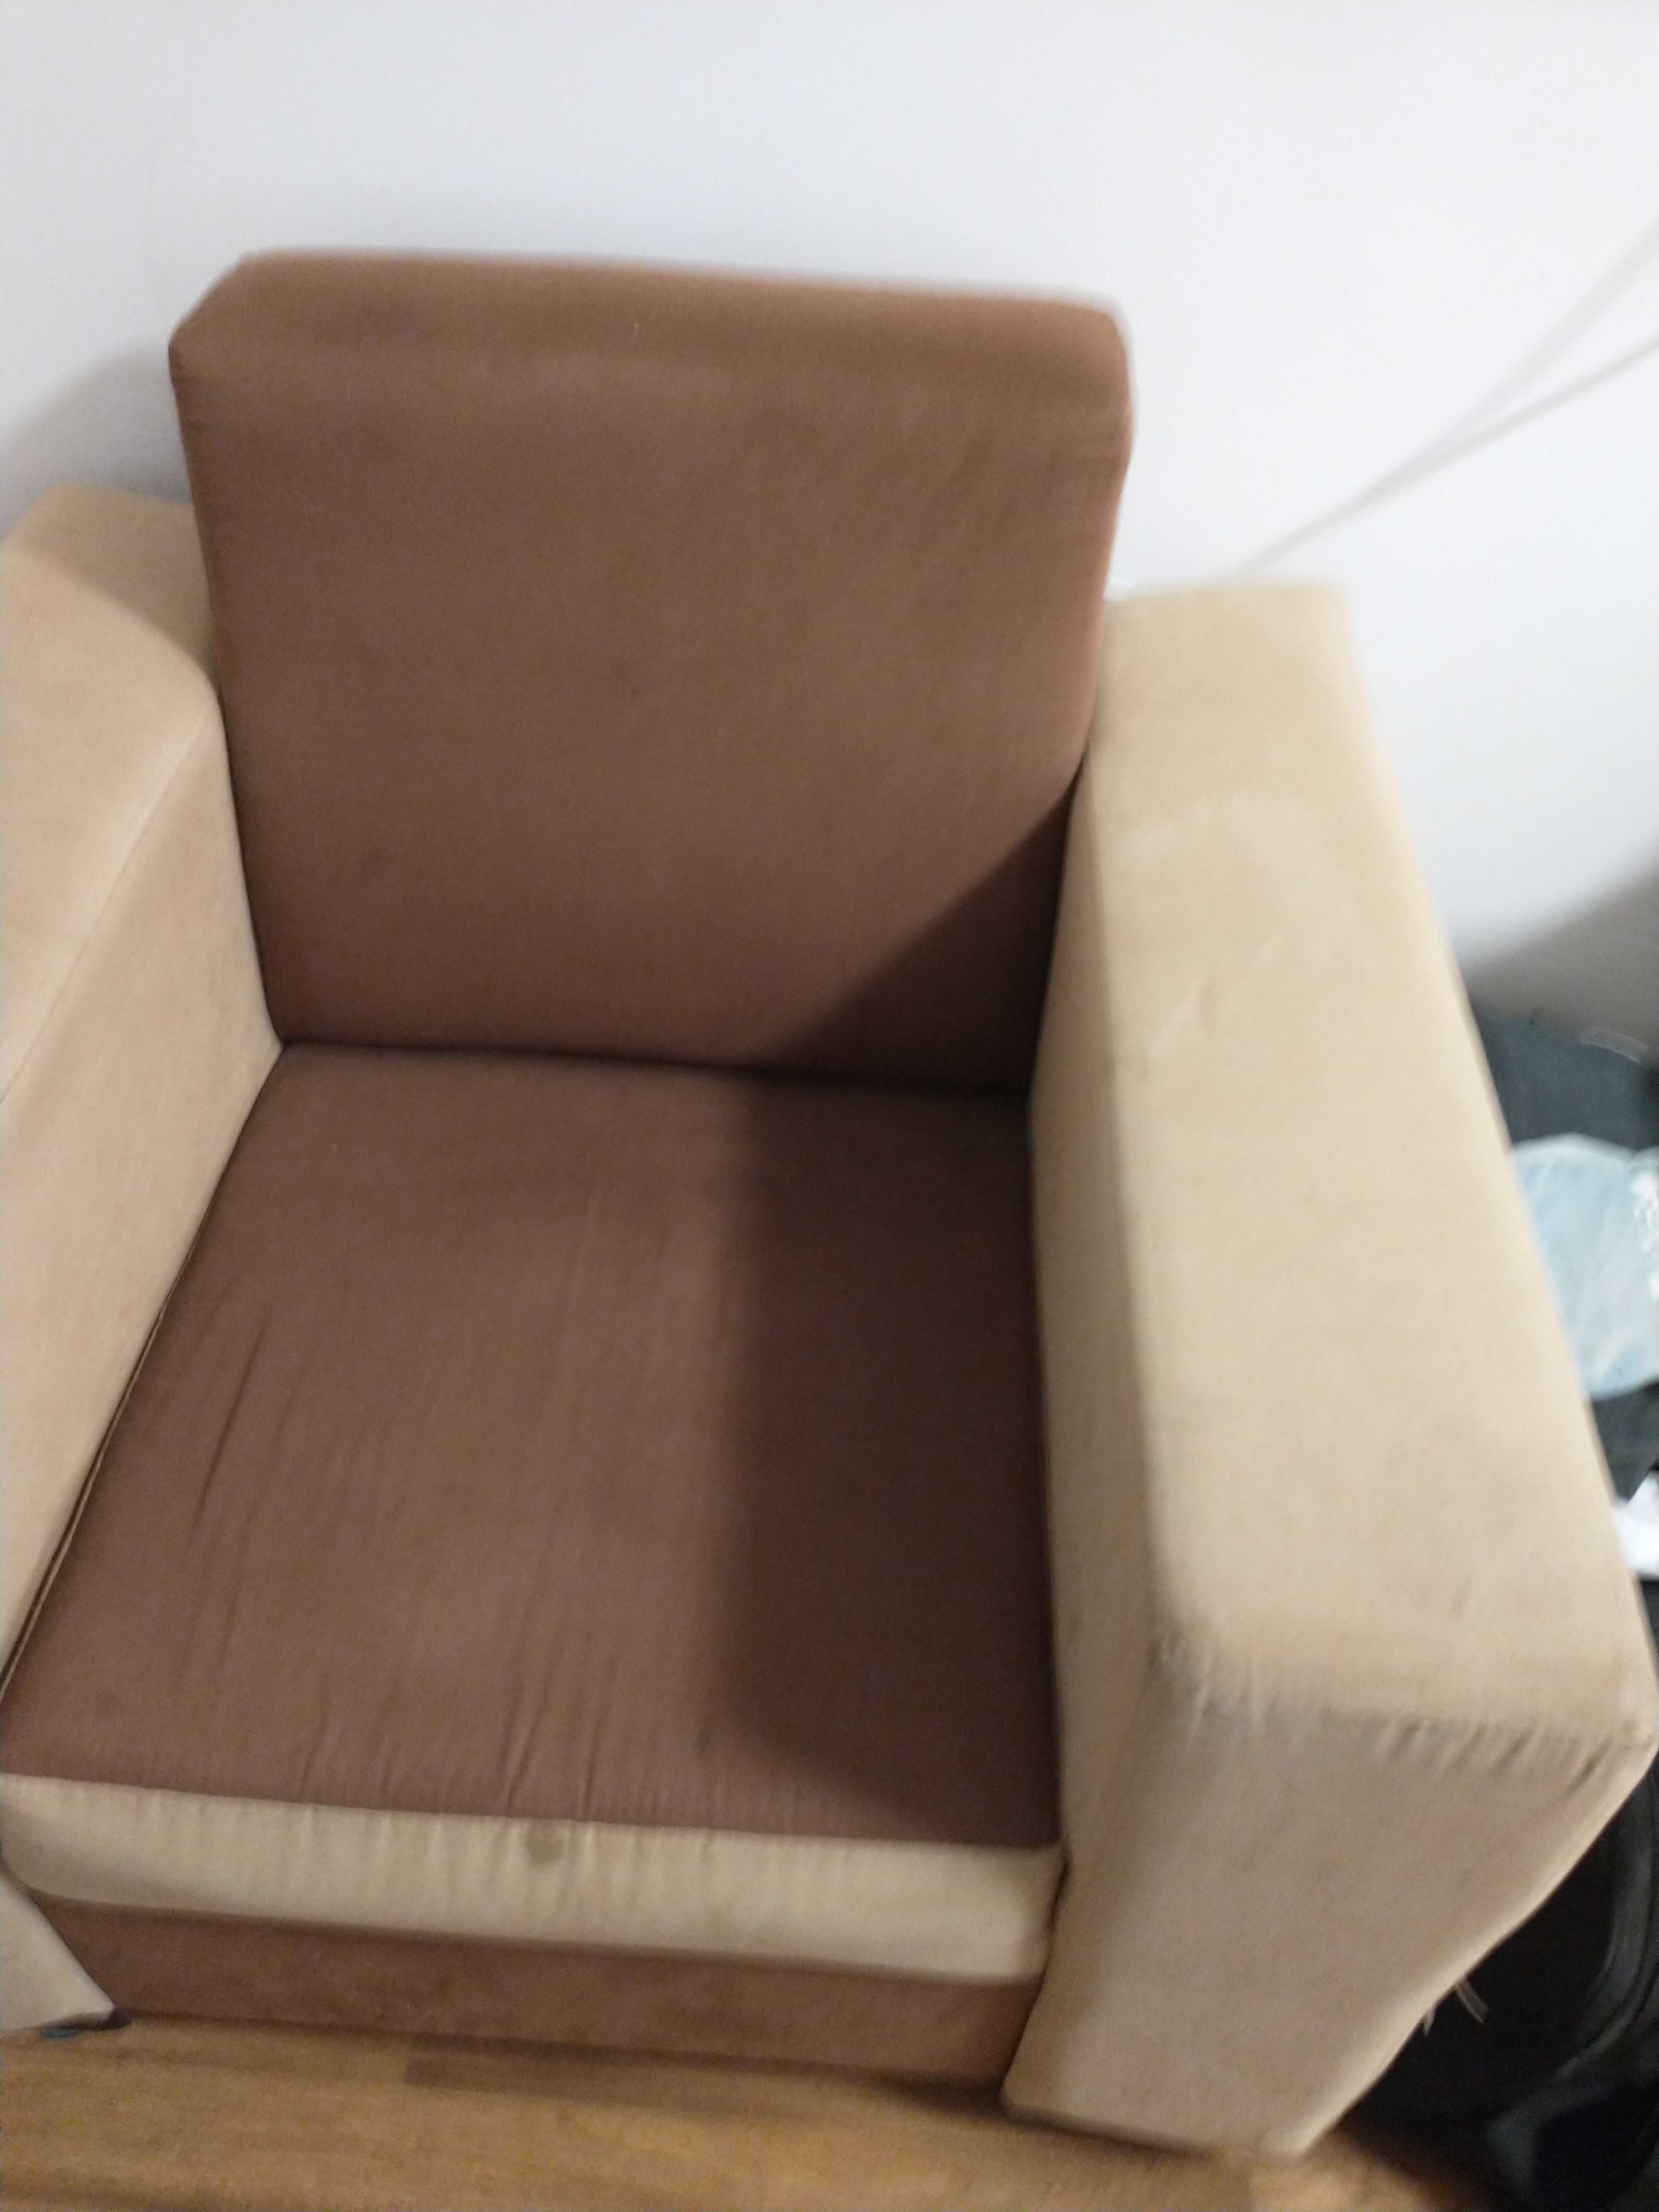 Fotel beżowo brązowy jak kwadrat stabilny